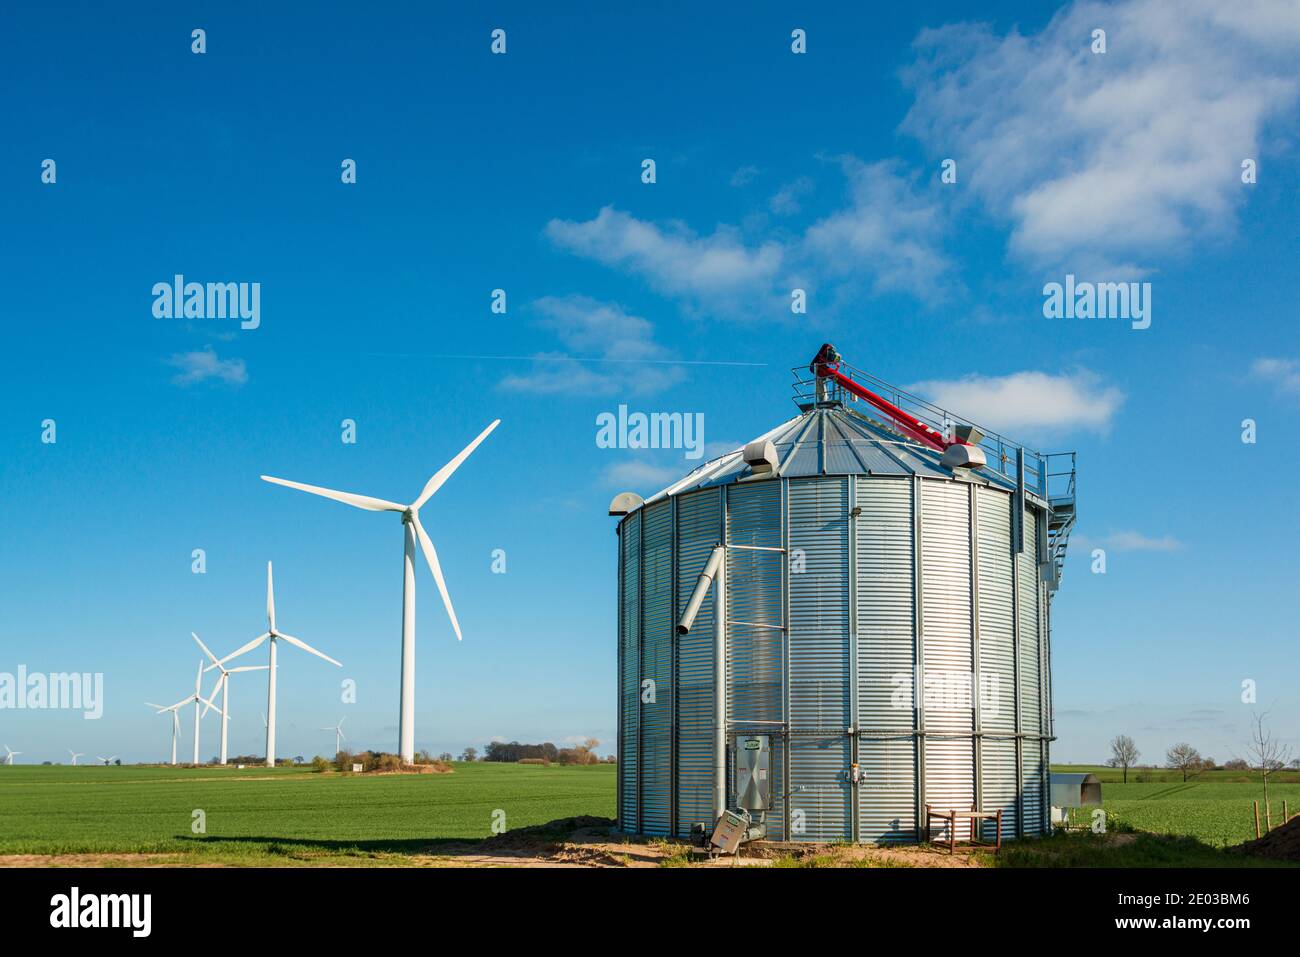 Biogasanlage und Windräder auf einem Feld in Schleswig-Holstein Foto de stock